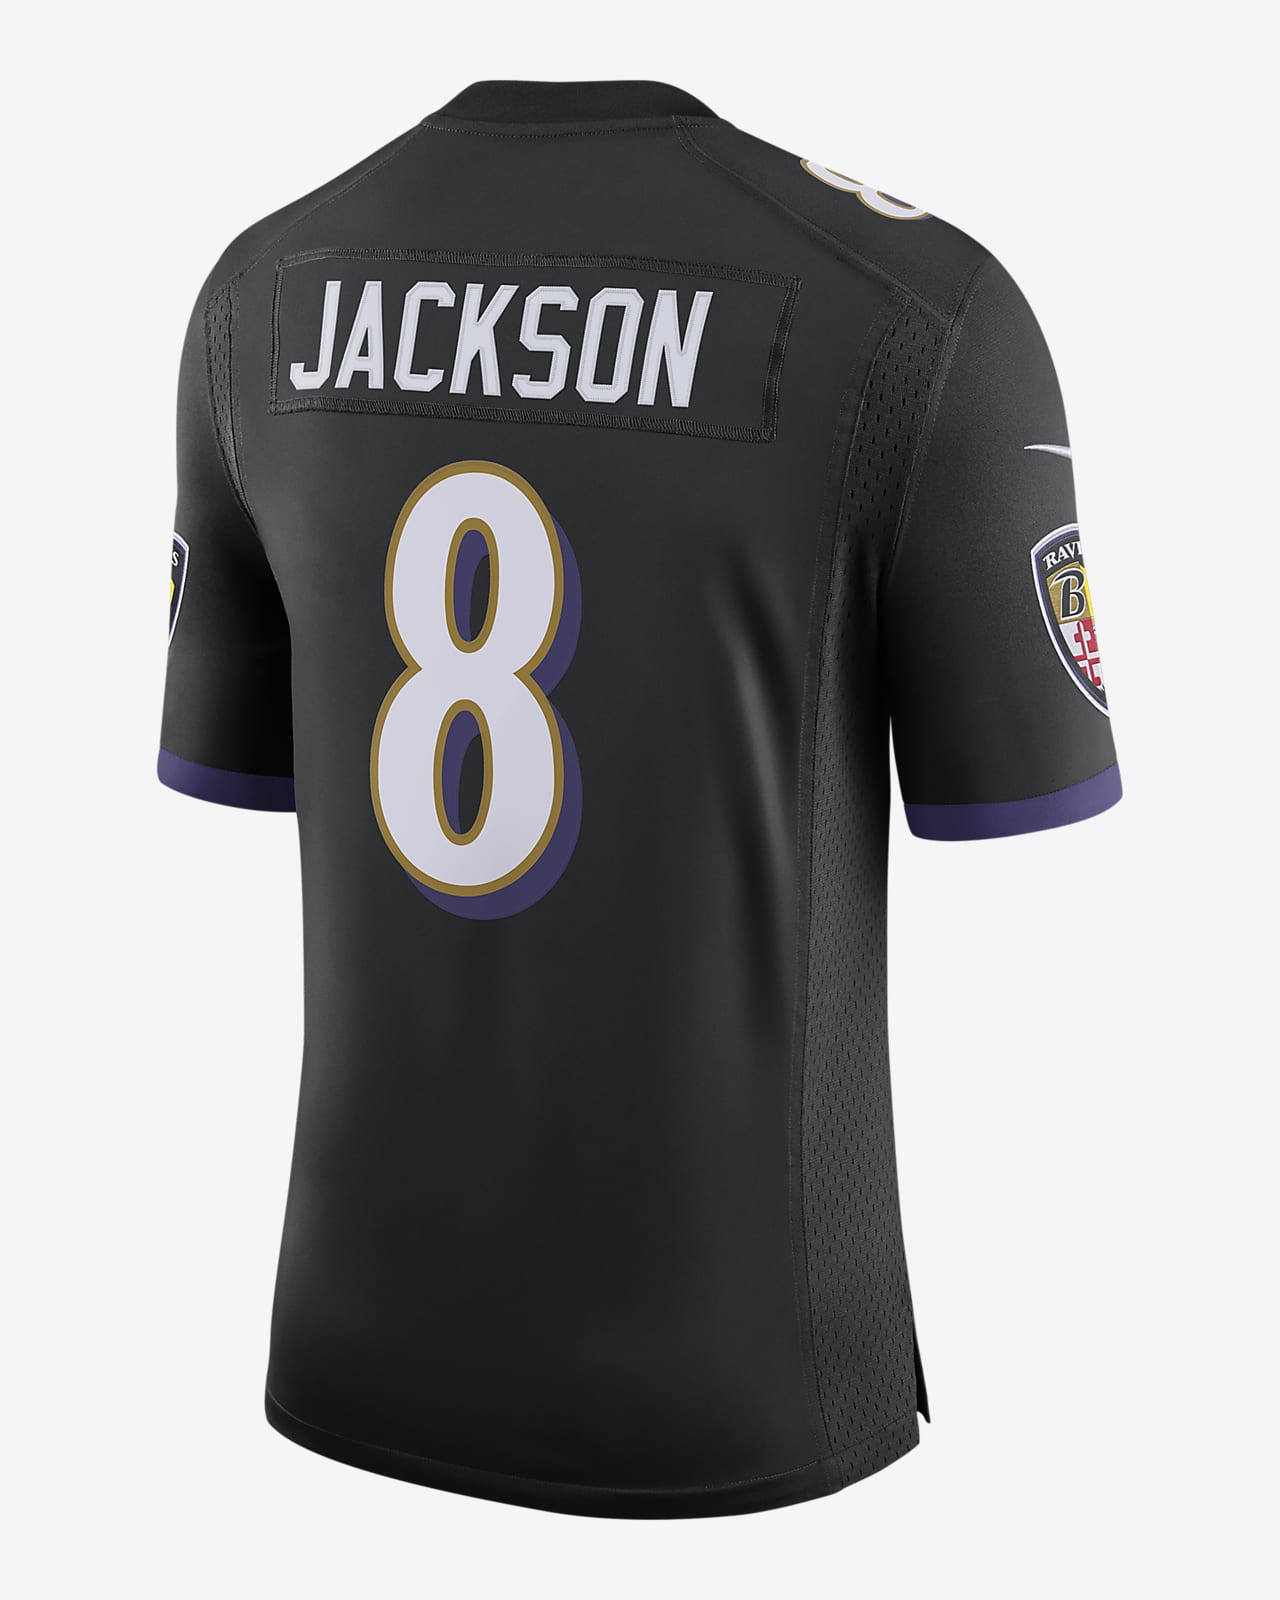 NFL Baltimore Ravens Vapor Untouchable (Lamar Jackson) Men's Limited Football Jersey